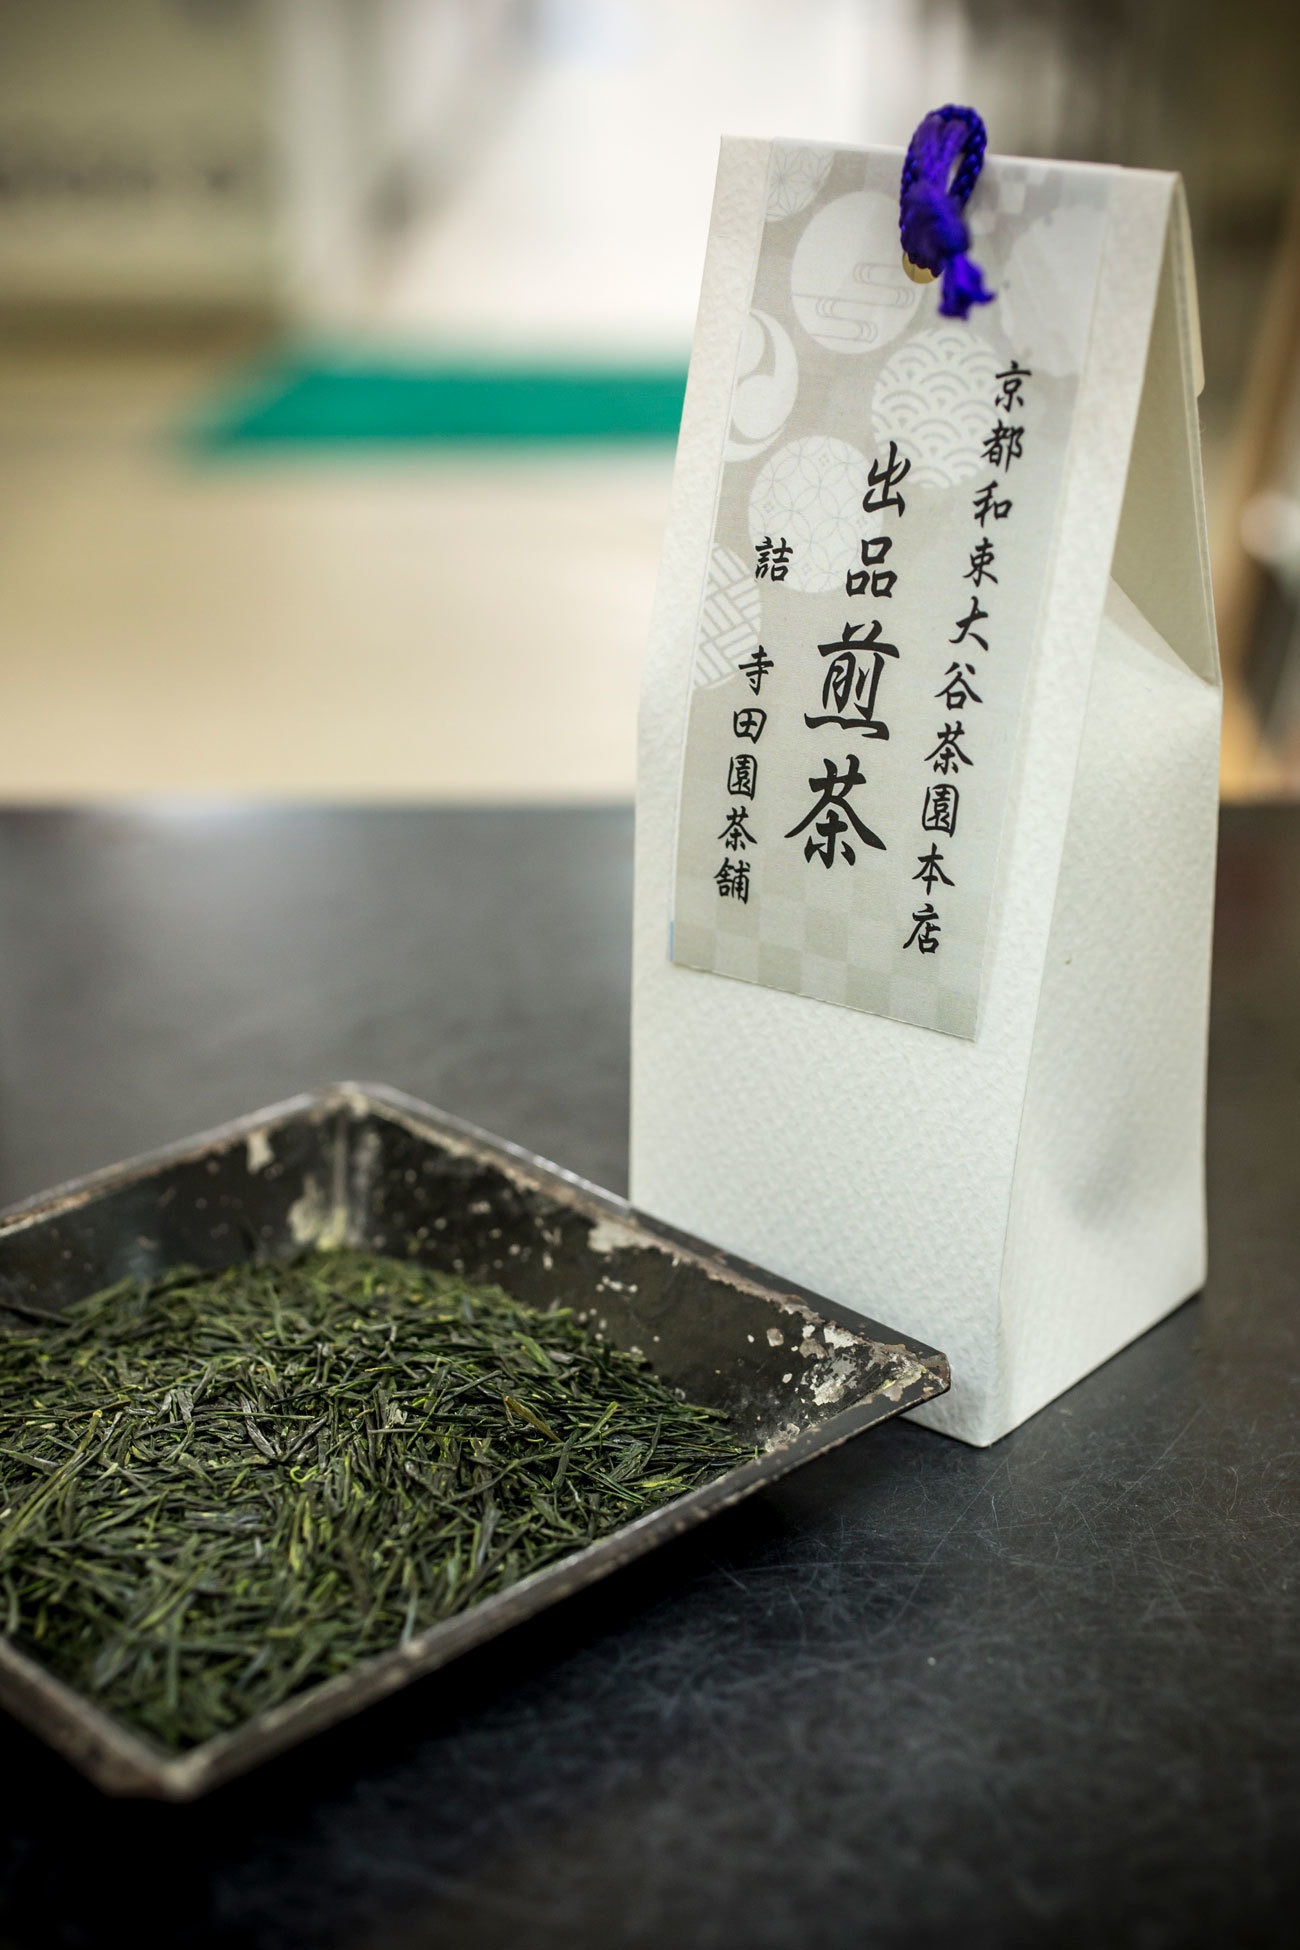 京都の宇治茶品評会の出品煎茶